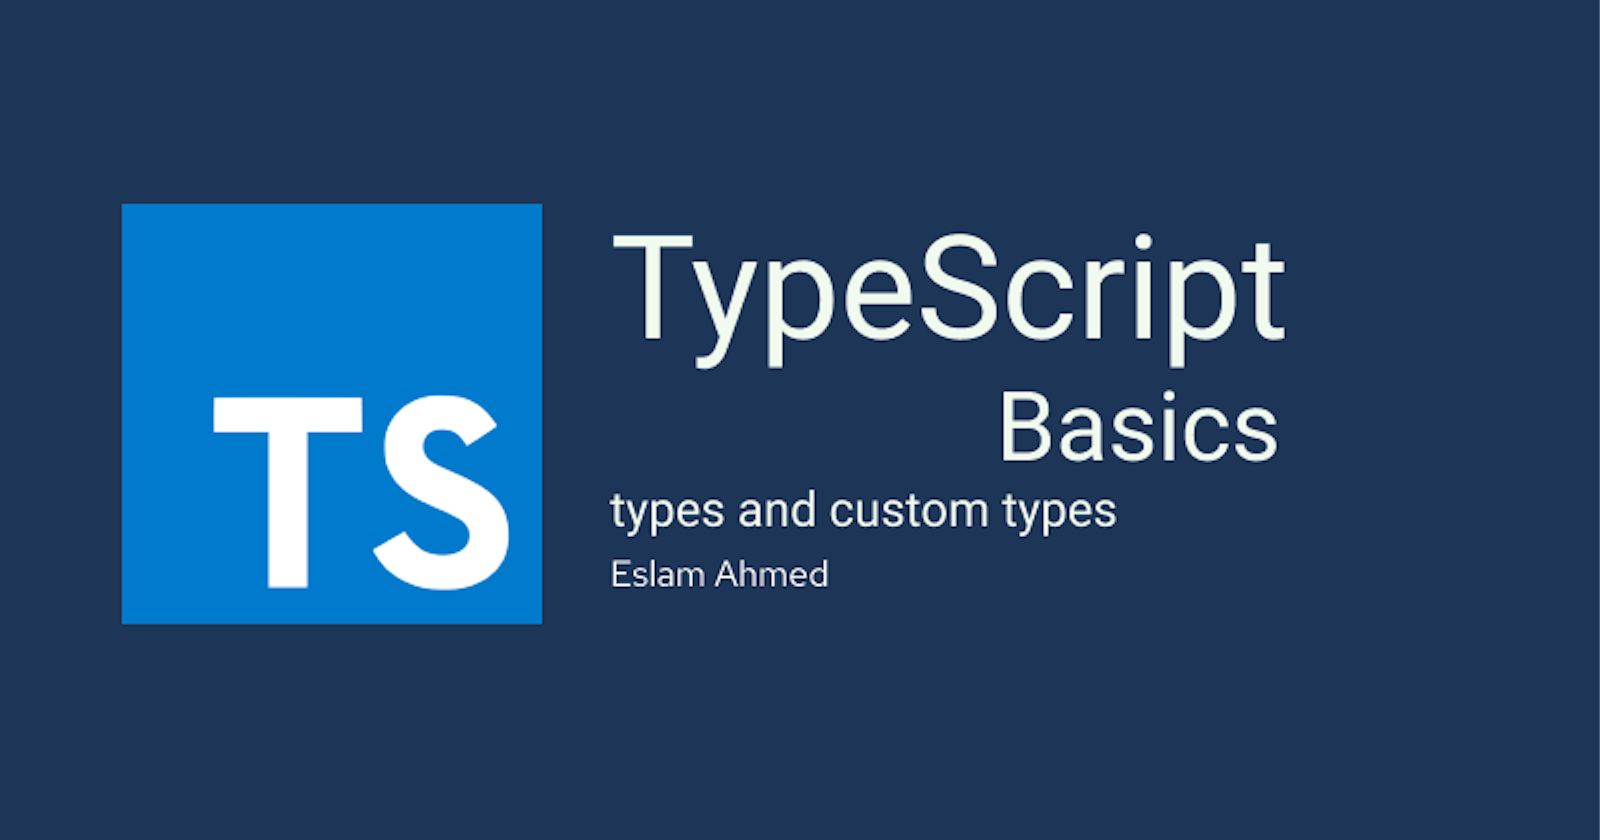 TypeScript Basics: Types